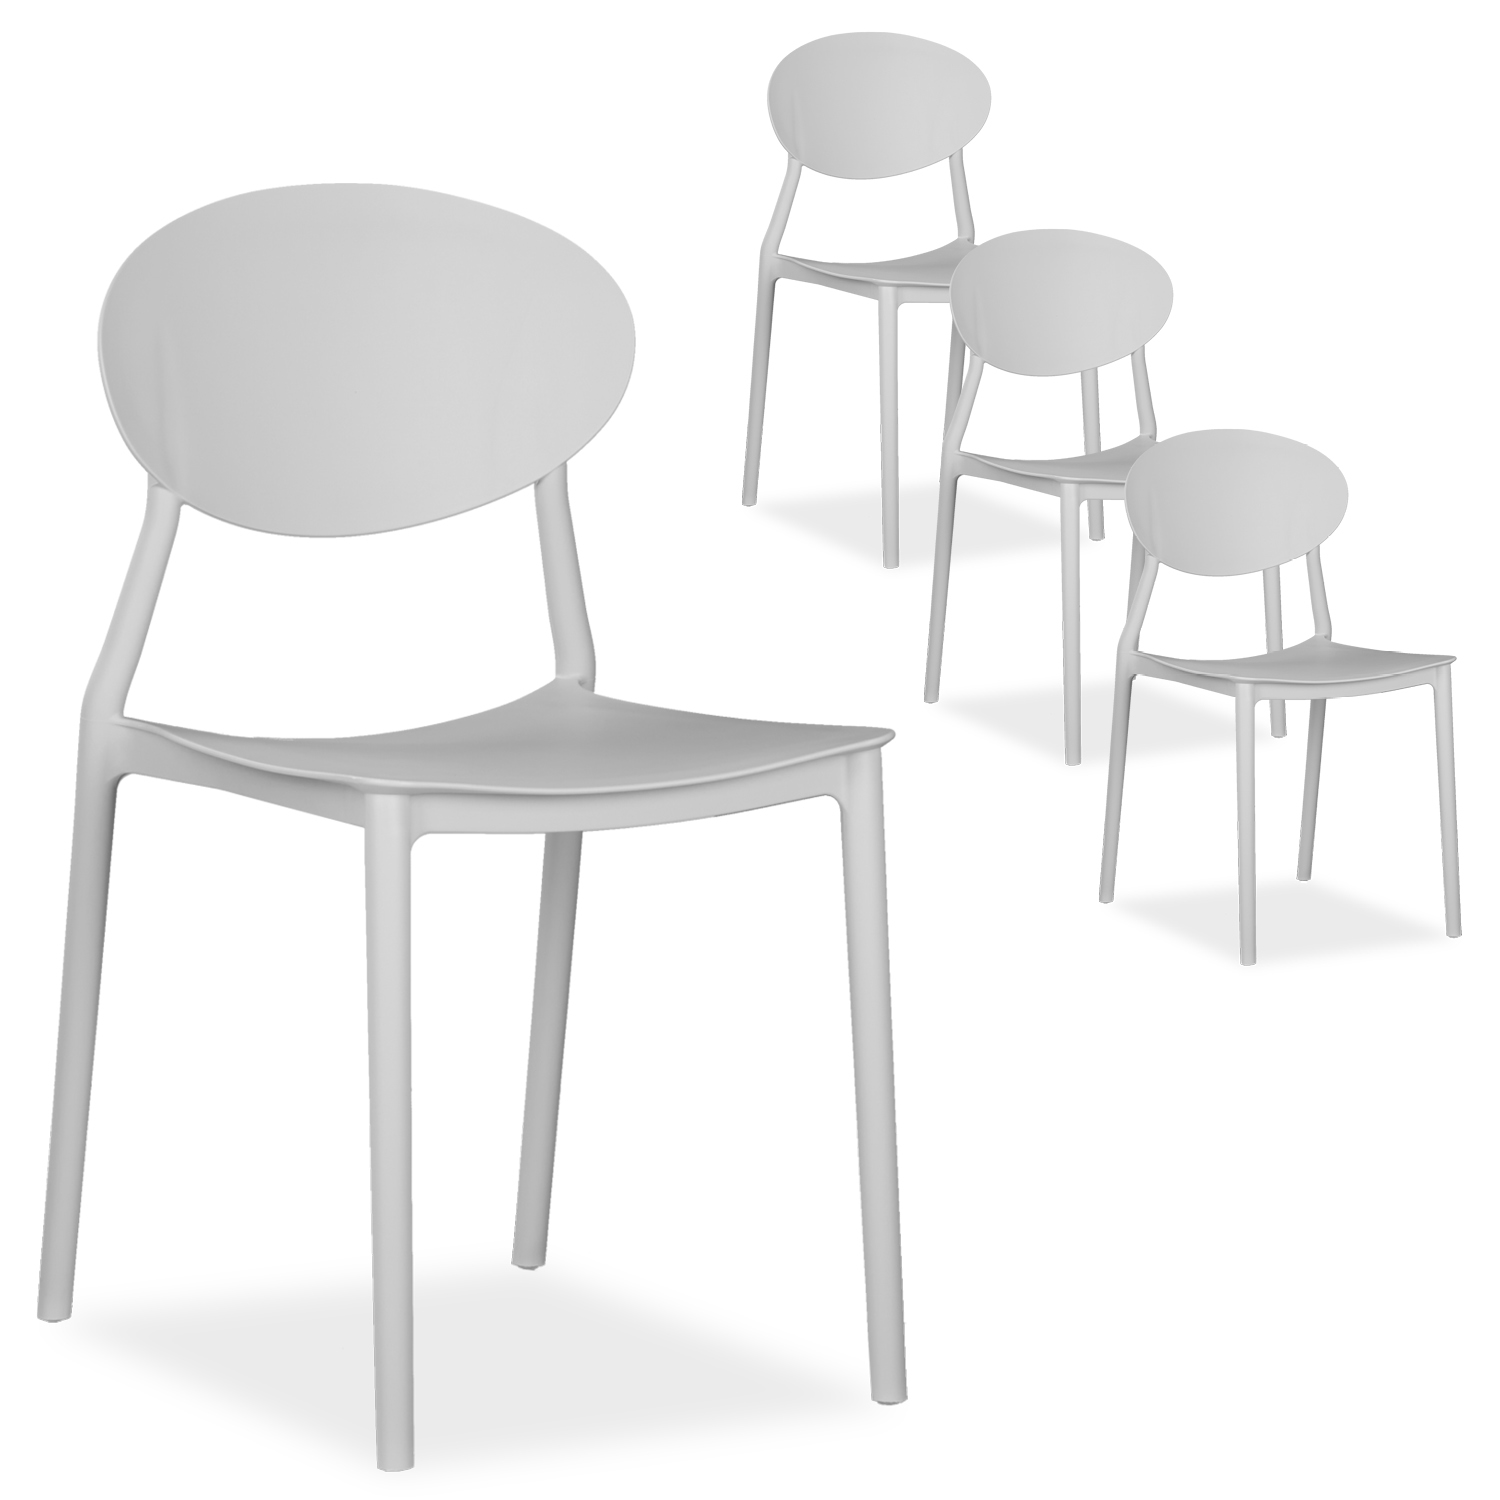 Chaise de jardin Lot de 4 Chaises design moderne Couleurs Différents Plastique Chaises exterieur Chaises empilable Chaise de cuisine